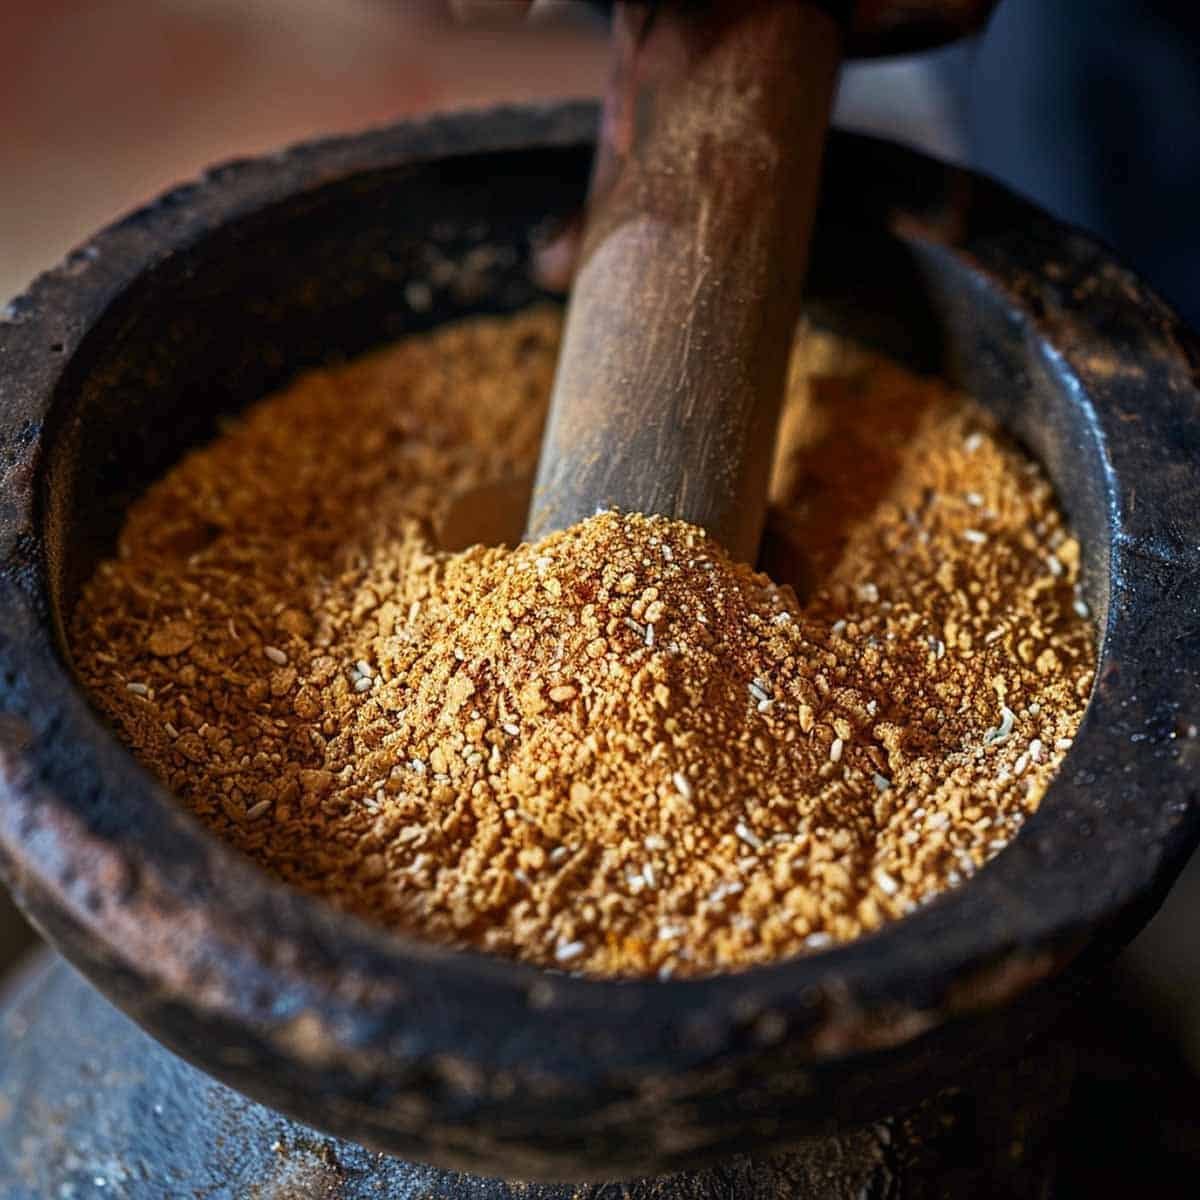 gringing sticky rice into powder turning into Roasted Rice Powder (Khao Khua)